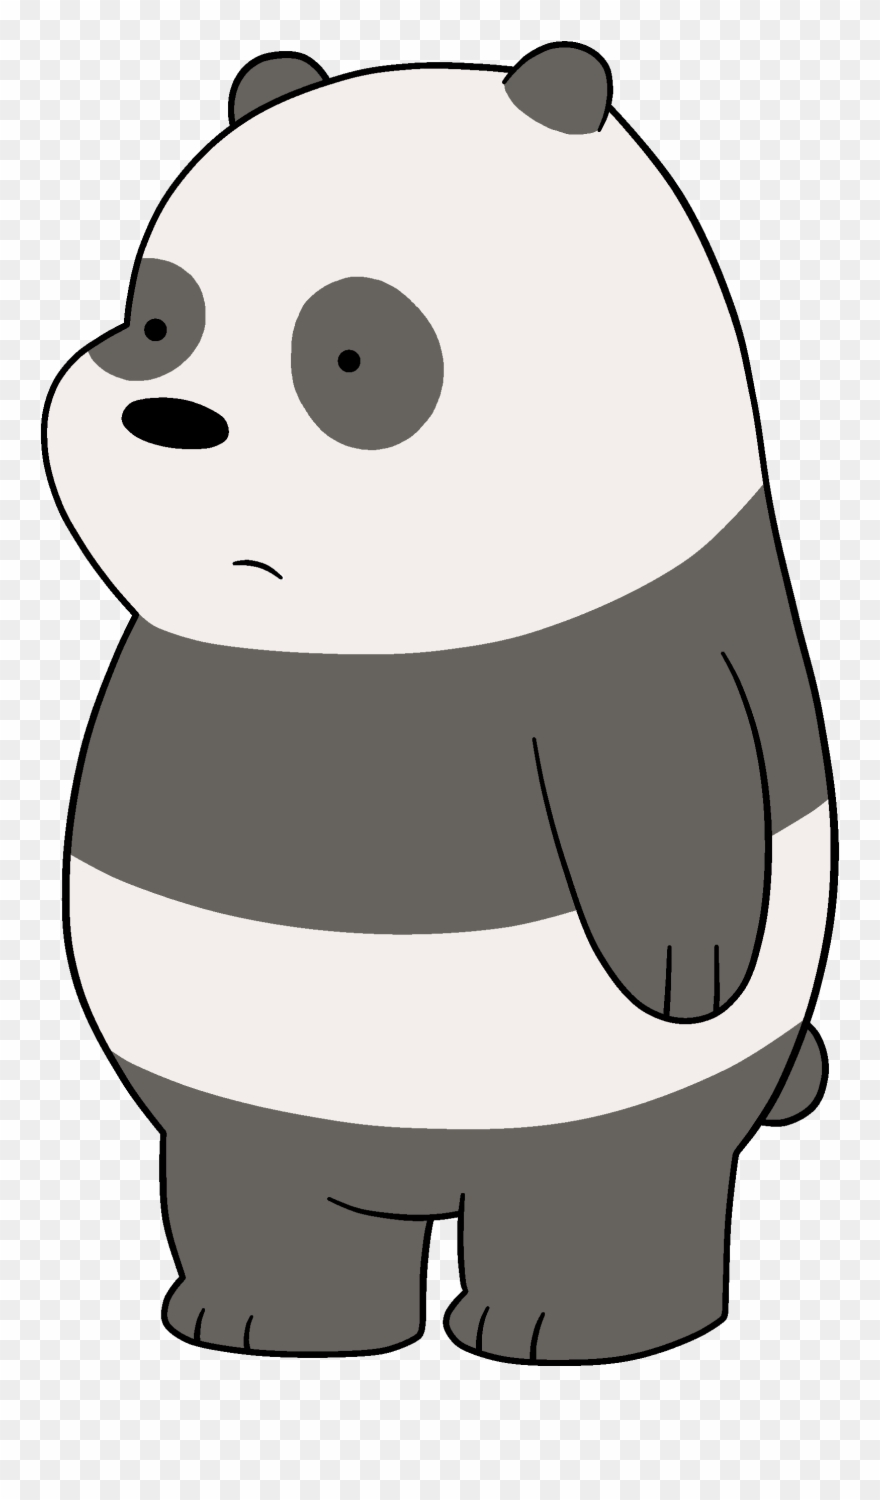 Cartoon Network Clipart Panda